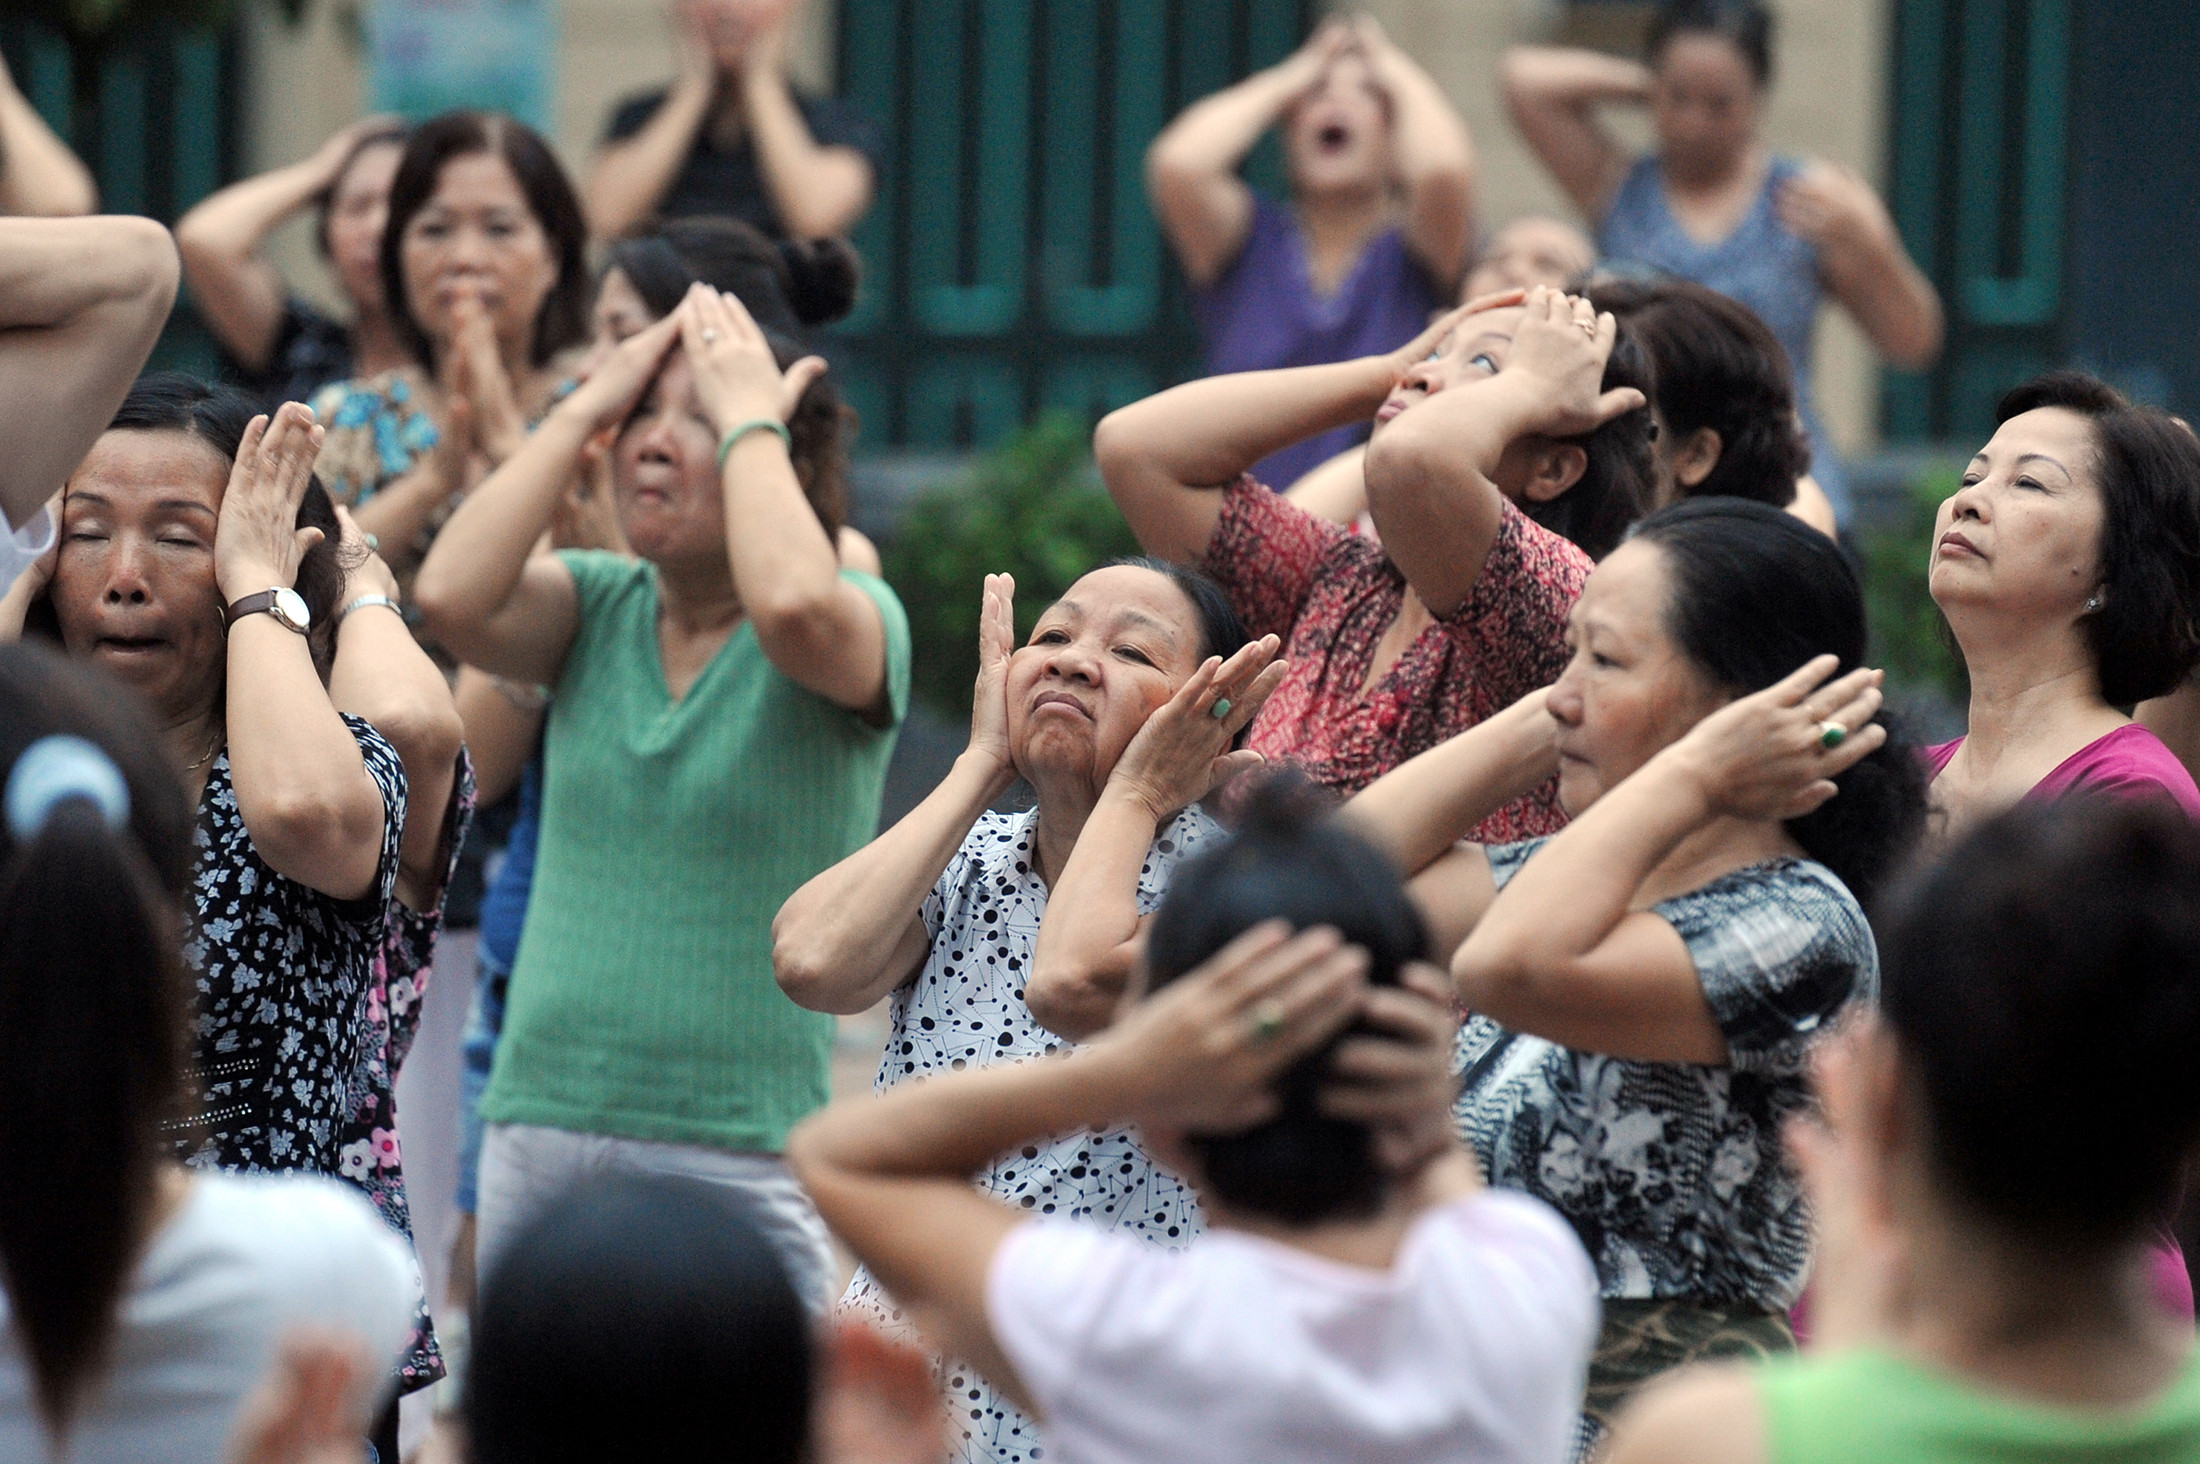 Tuổi thọ trung bình người Việt hơn 73 nhưng tuổi sống khoẻ chỉ đạt 64